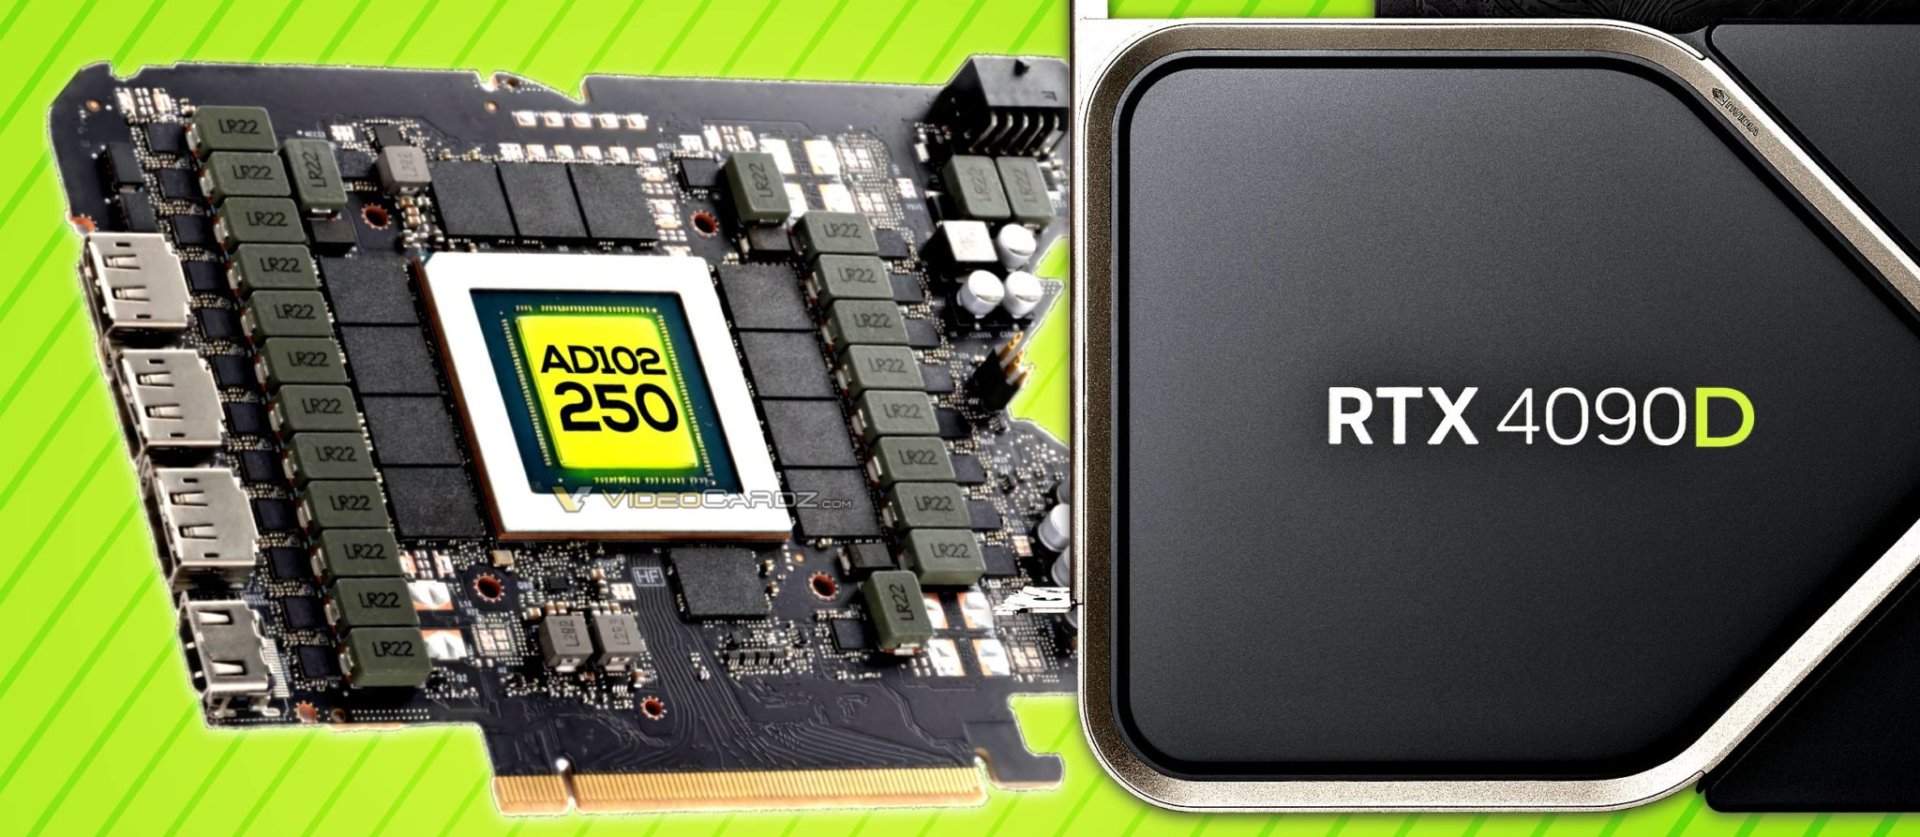 英伟达™（NVIDIA®）GeForce RTX 4090D 中国版将配备 AD102-250 GPU